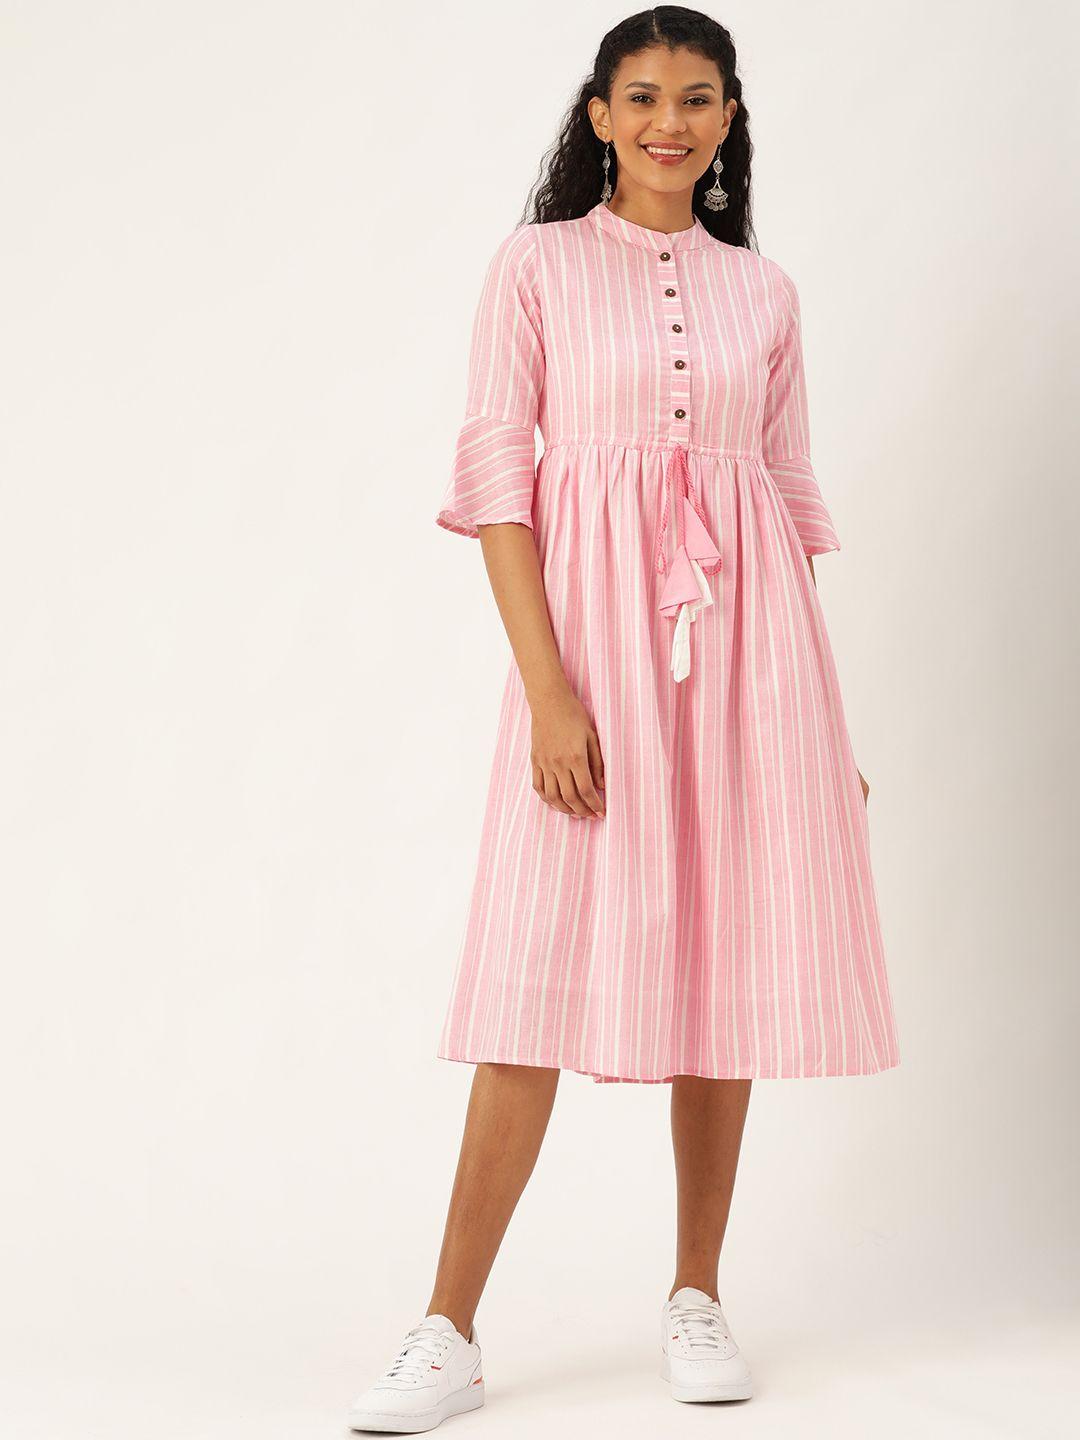 shae by sassafras women pink & white striped a-line dress